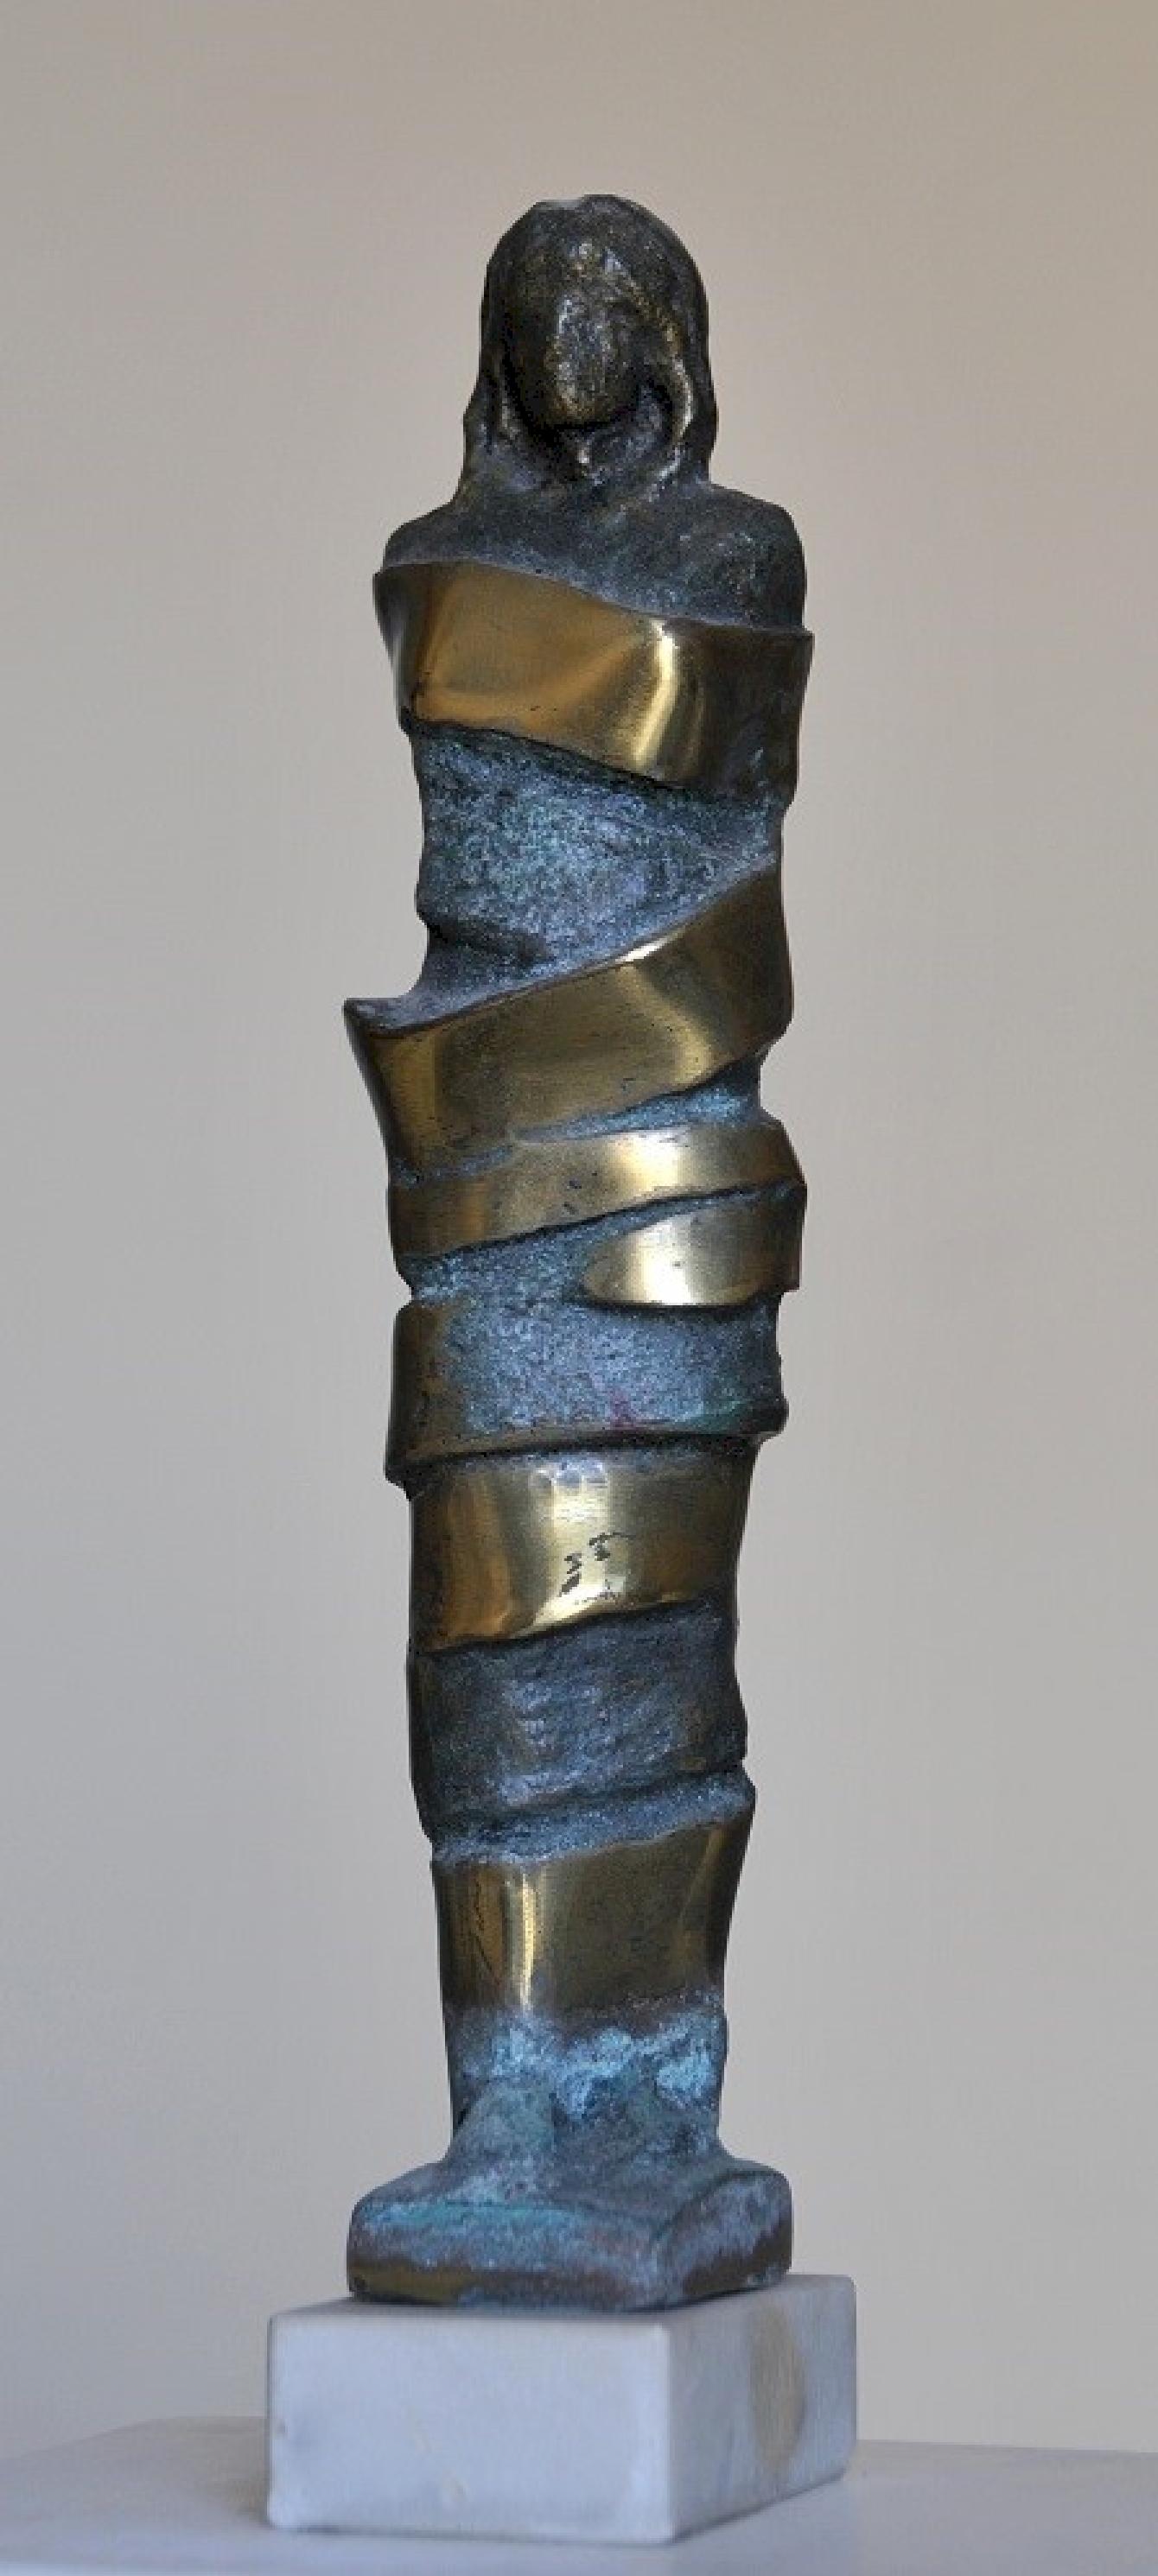 Sculpture en bronze "Bound I" de 13" x 2" x 3" pouces par Sarkis Tossonian			

Sarkis Tossoonian est né à Alexandrie en 1953. Il est diplômé de la Faculté des Beaux-Arts/Sculpture en 1979. Il a commencé à exposer dans des expositions individuelles